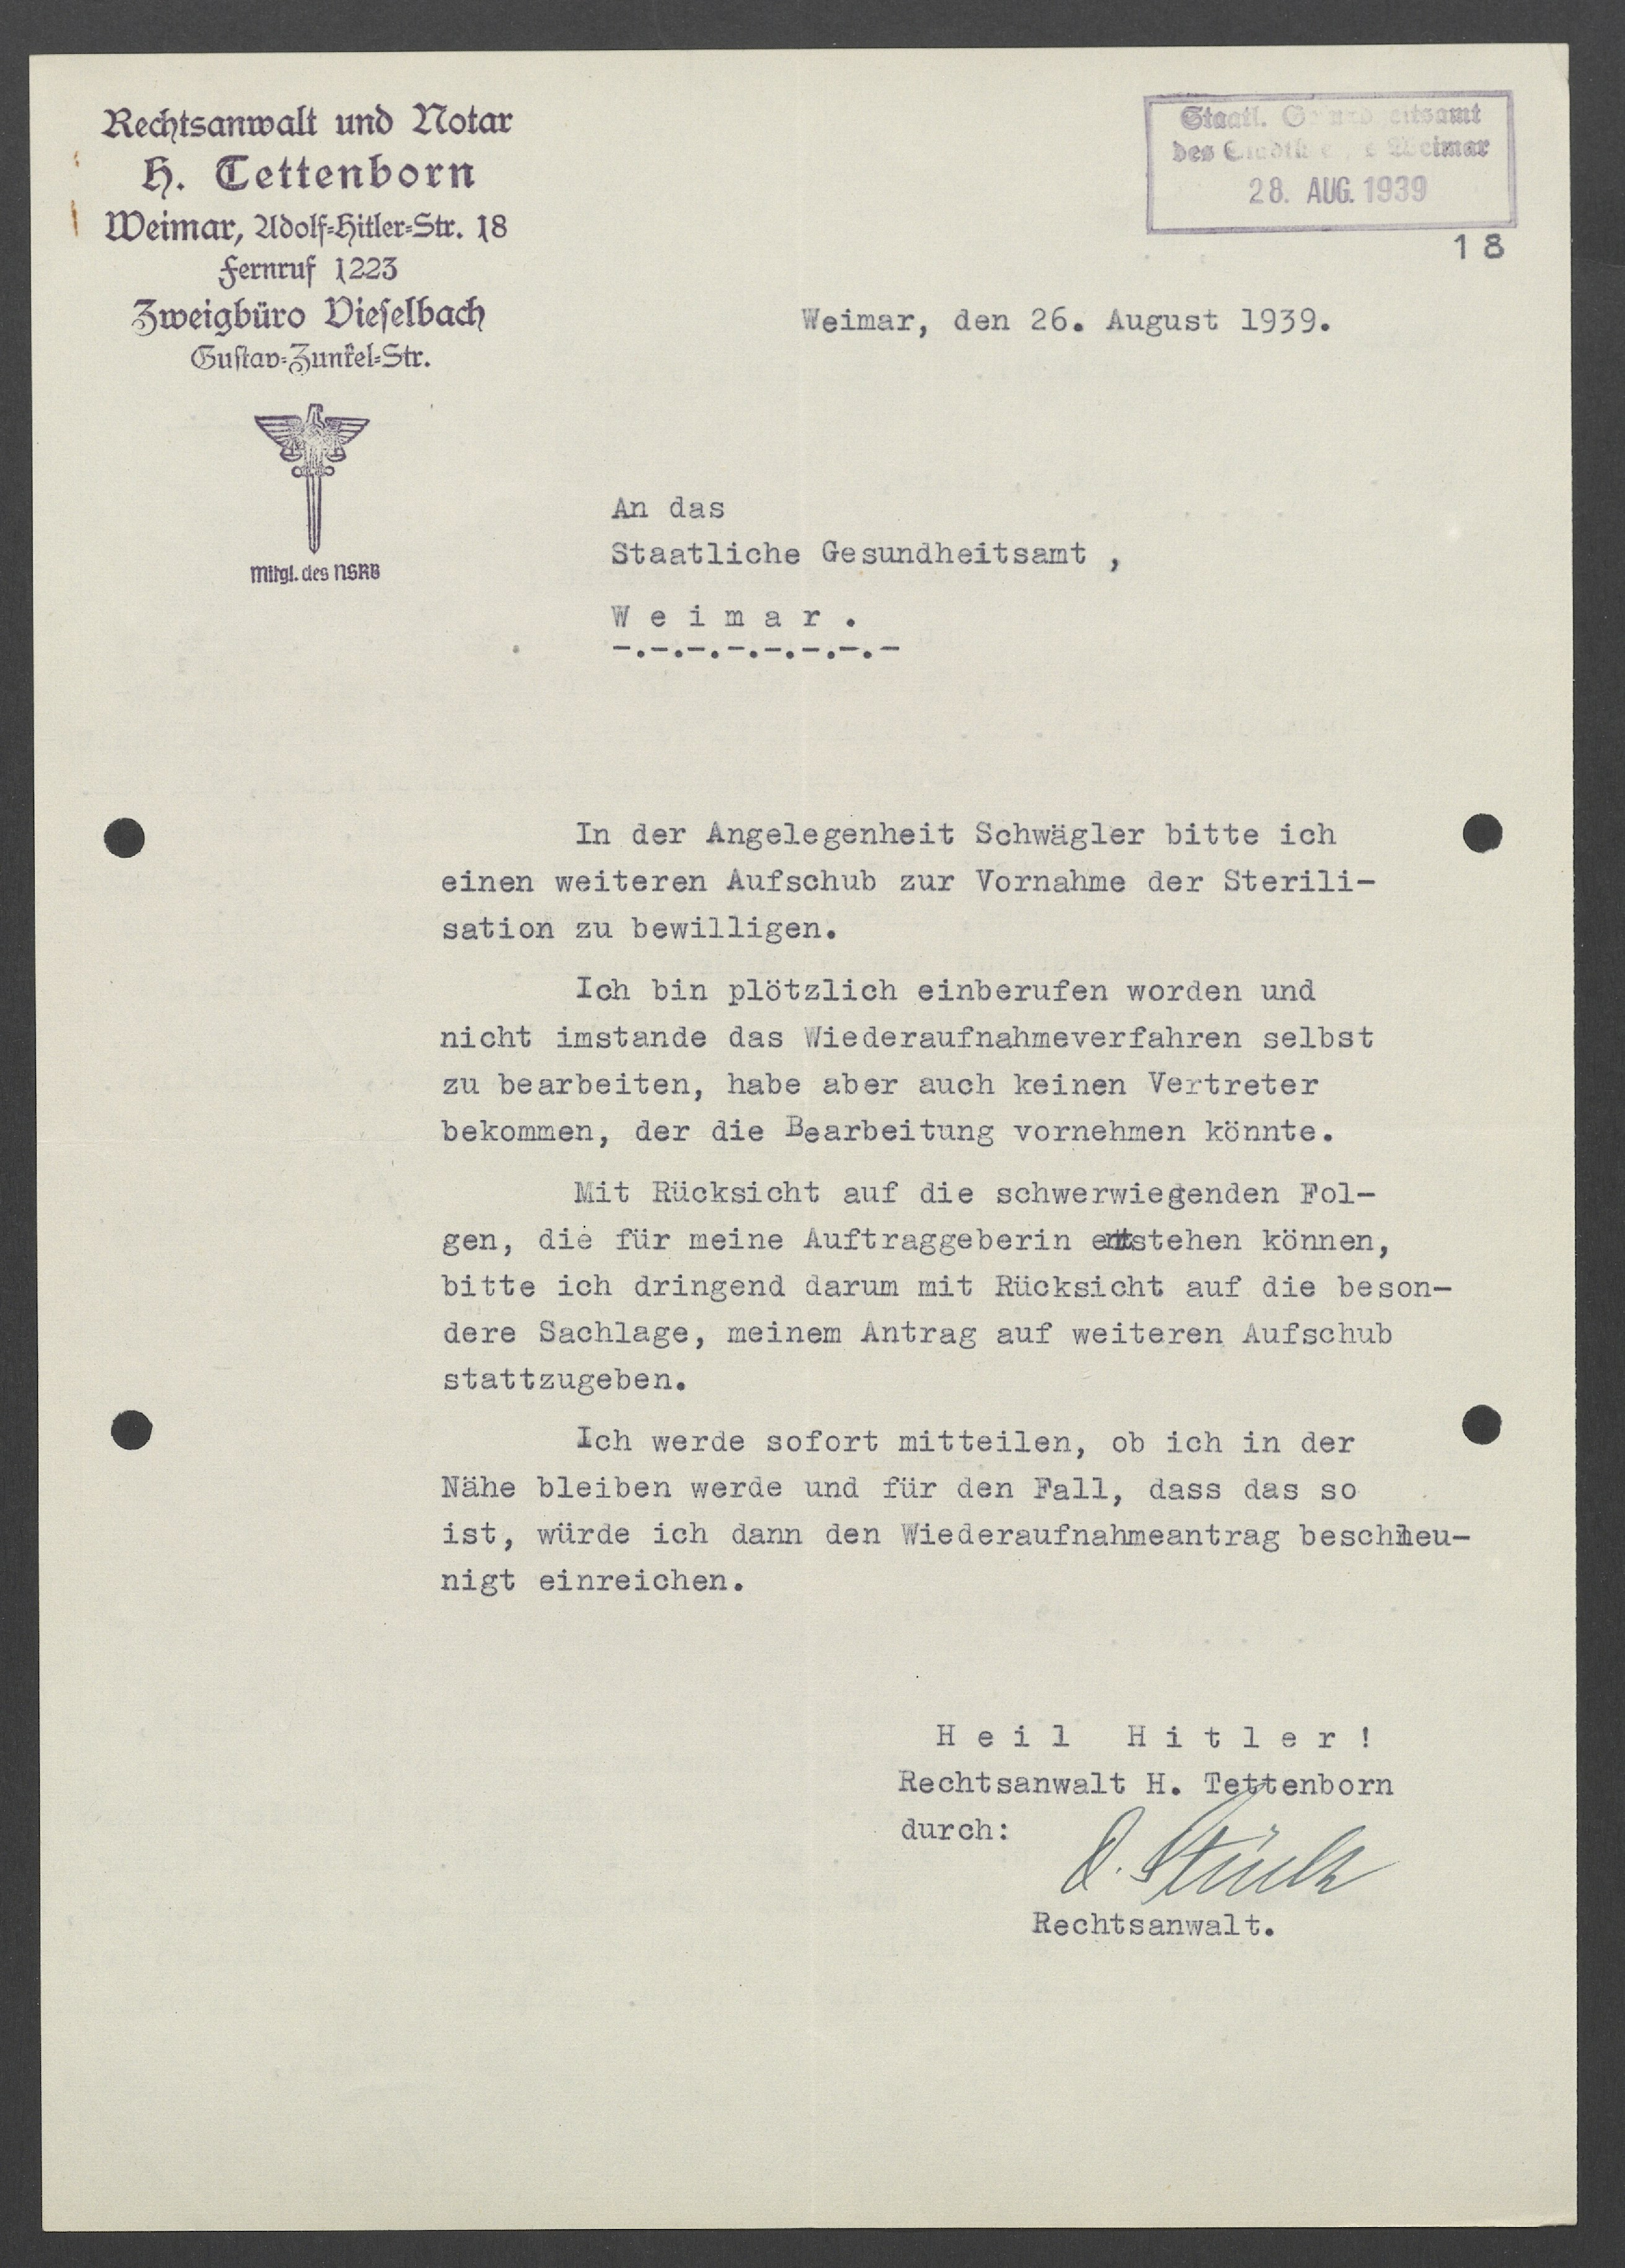 Rechtsanwalt Tettenborn bittet den Amtsarzt Freienstein um Aufschub der Sterilisation von Klara Schwägler, da er das geplante Wiederaufnahmeverfahren wegen "plötzlicher Einberufung" nicht bearbeiten kann. Der Brief wurde am 26. August 1939 verfasst.